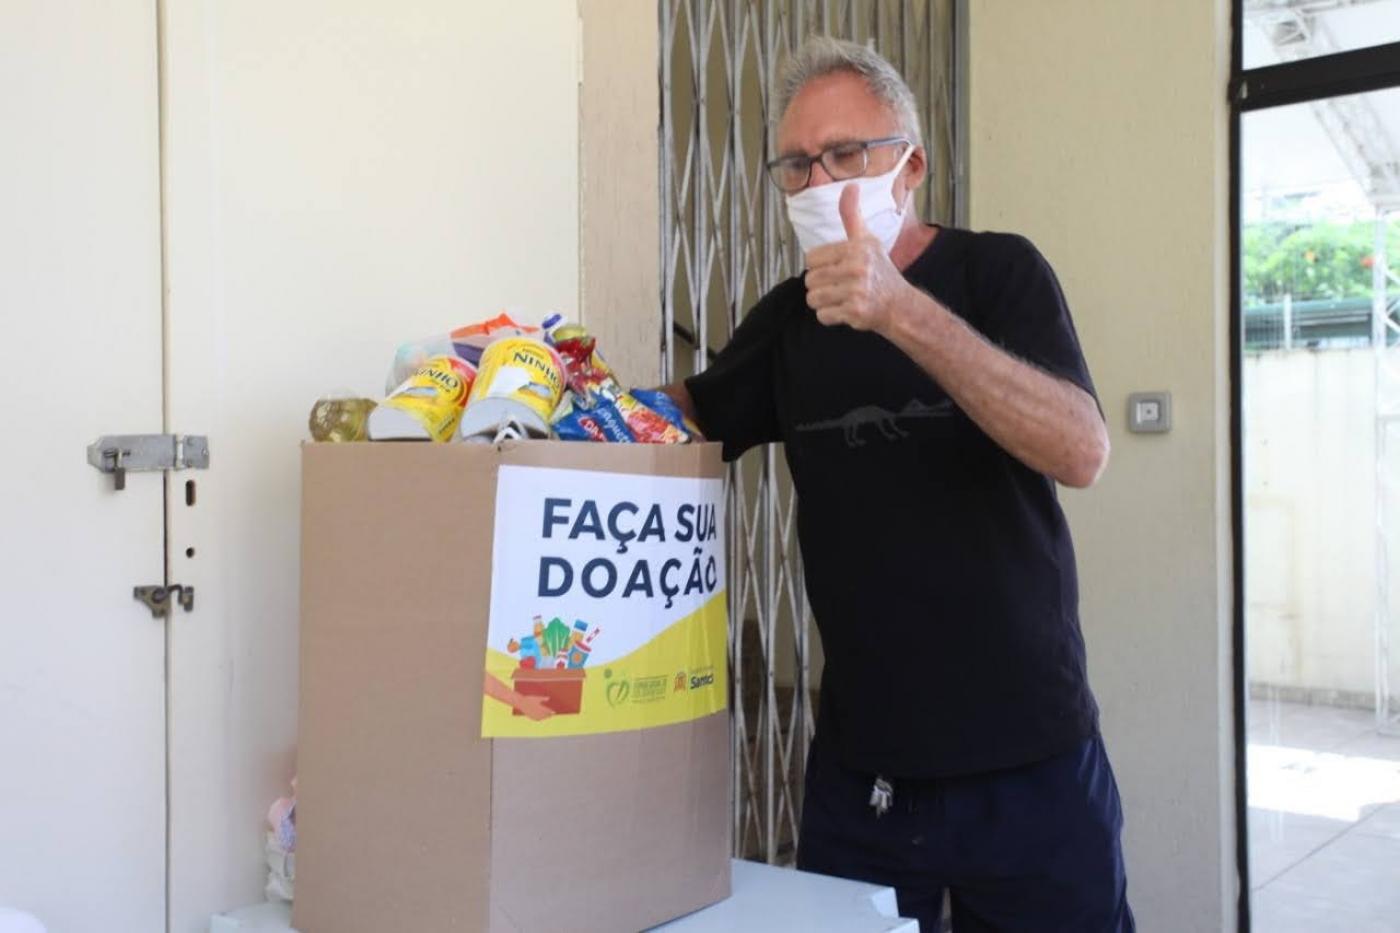 Homem usando máscara deposita alimento em caixa de papelão. Na frente da caixa está escrito 